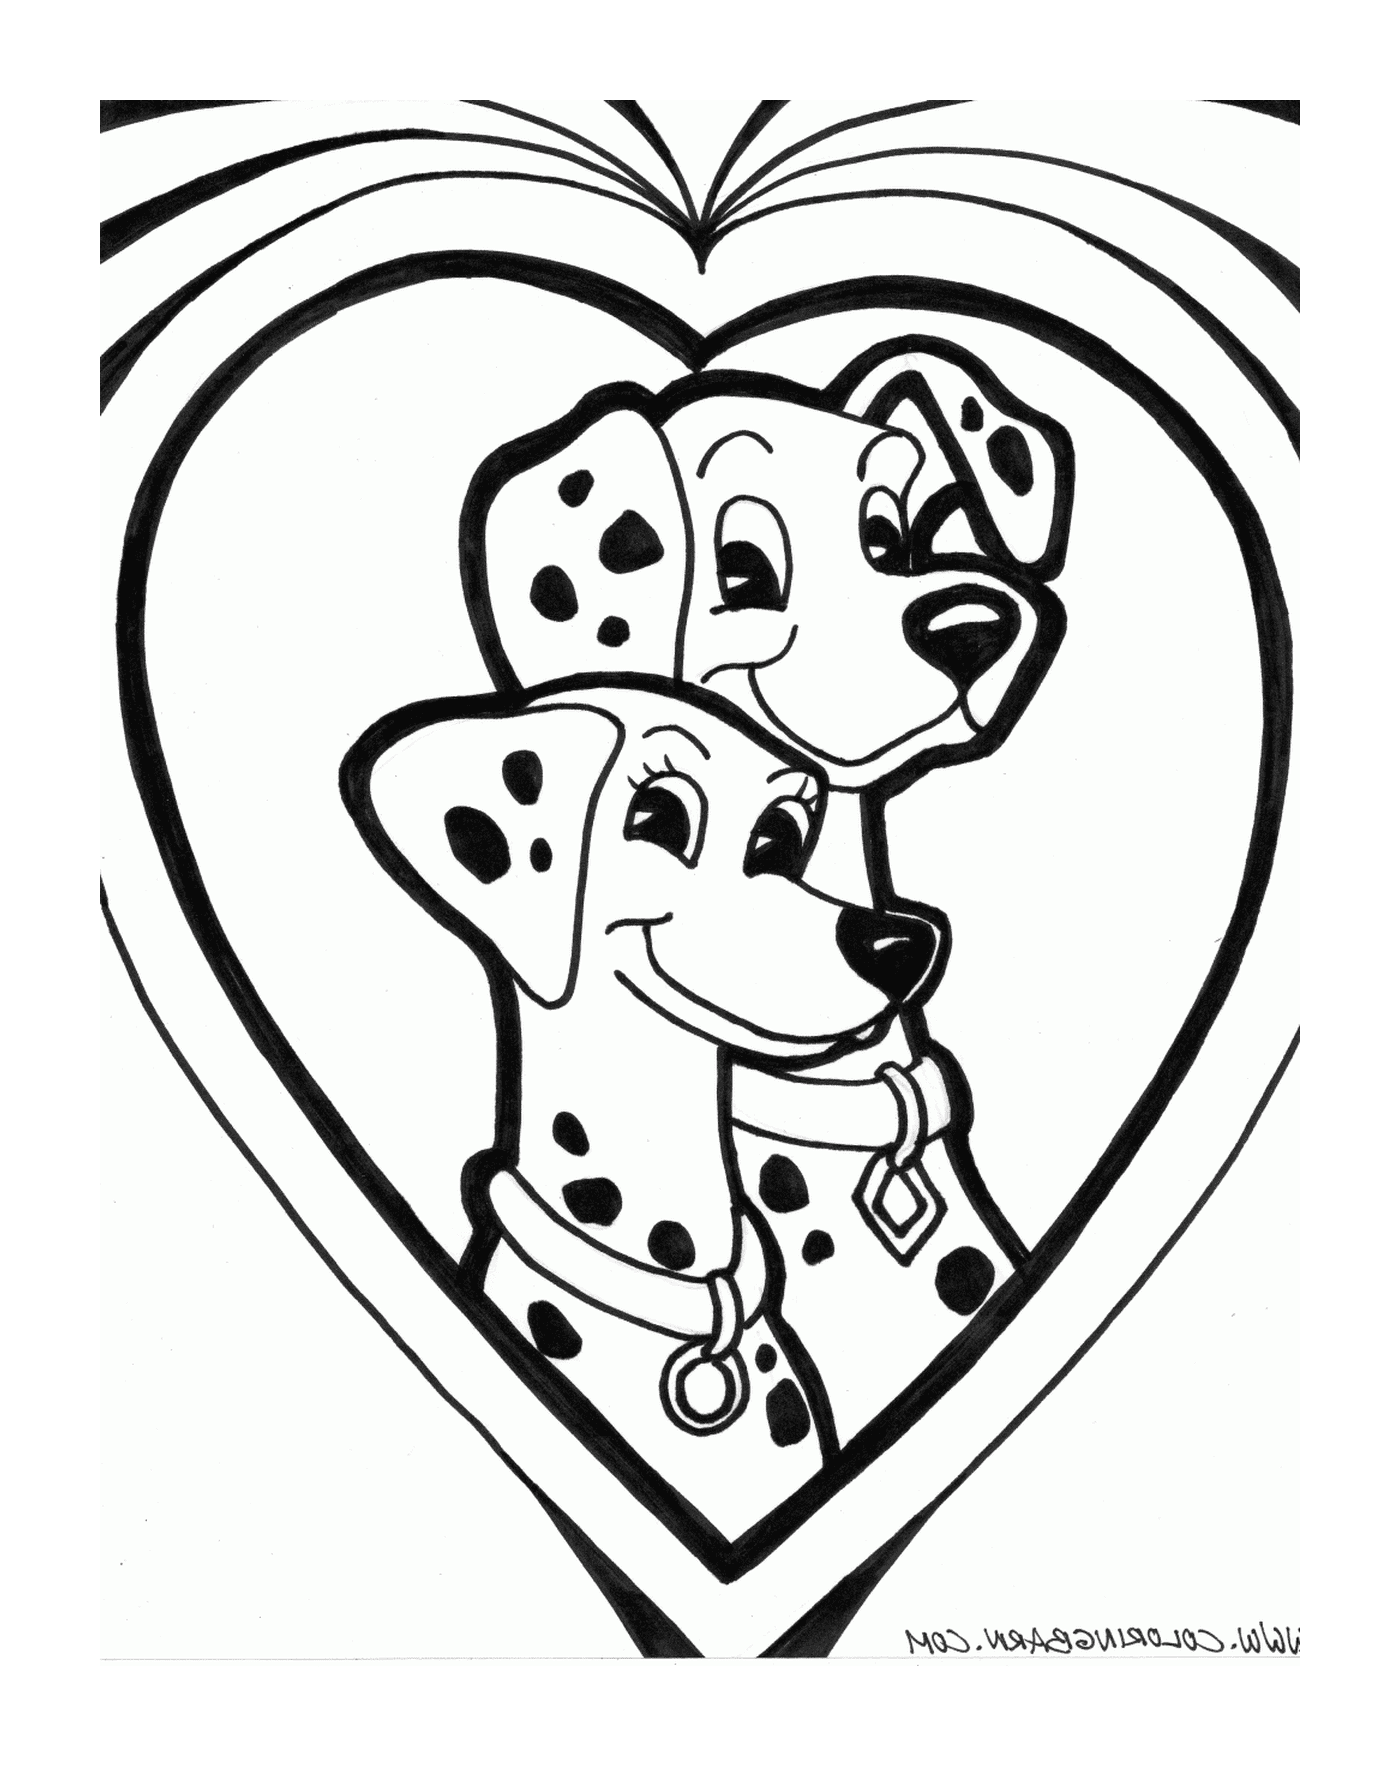  Zwei Dalmatiner sitzen vor einem Herzen 